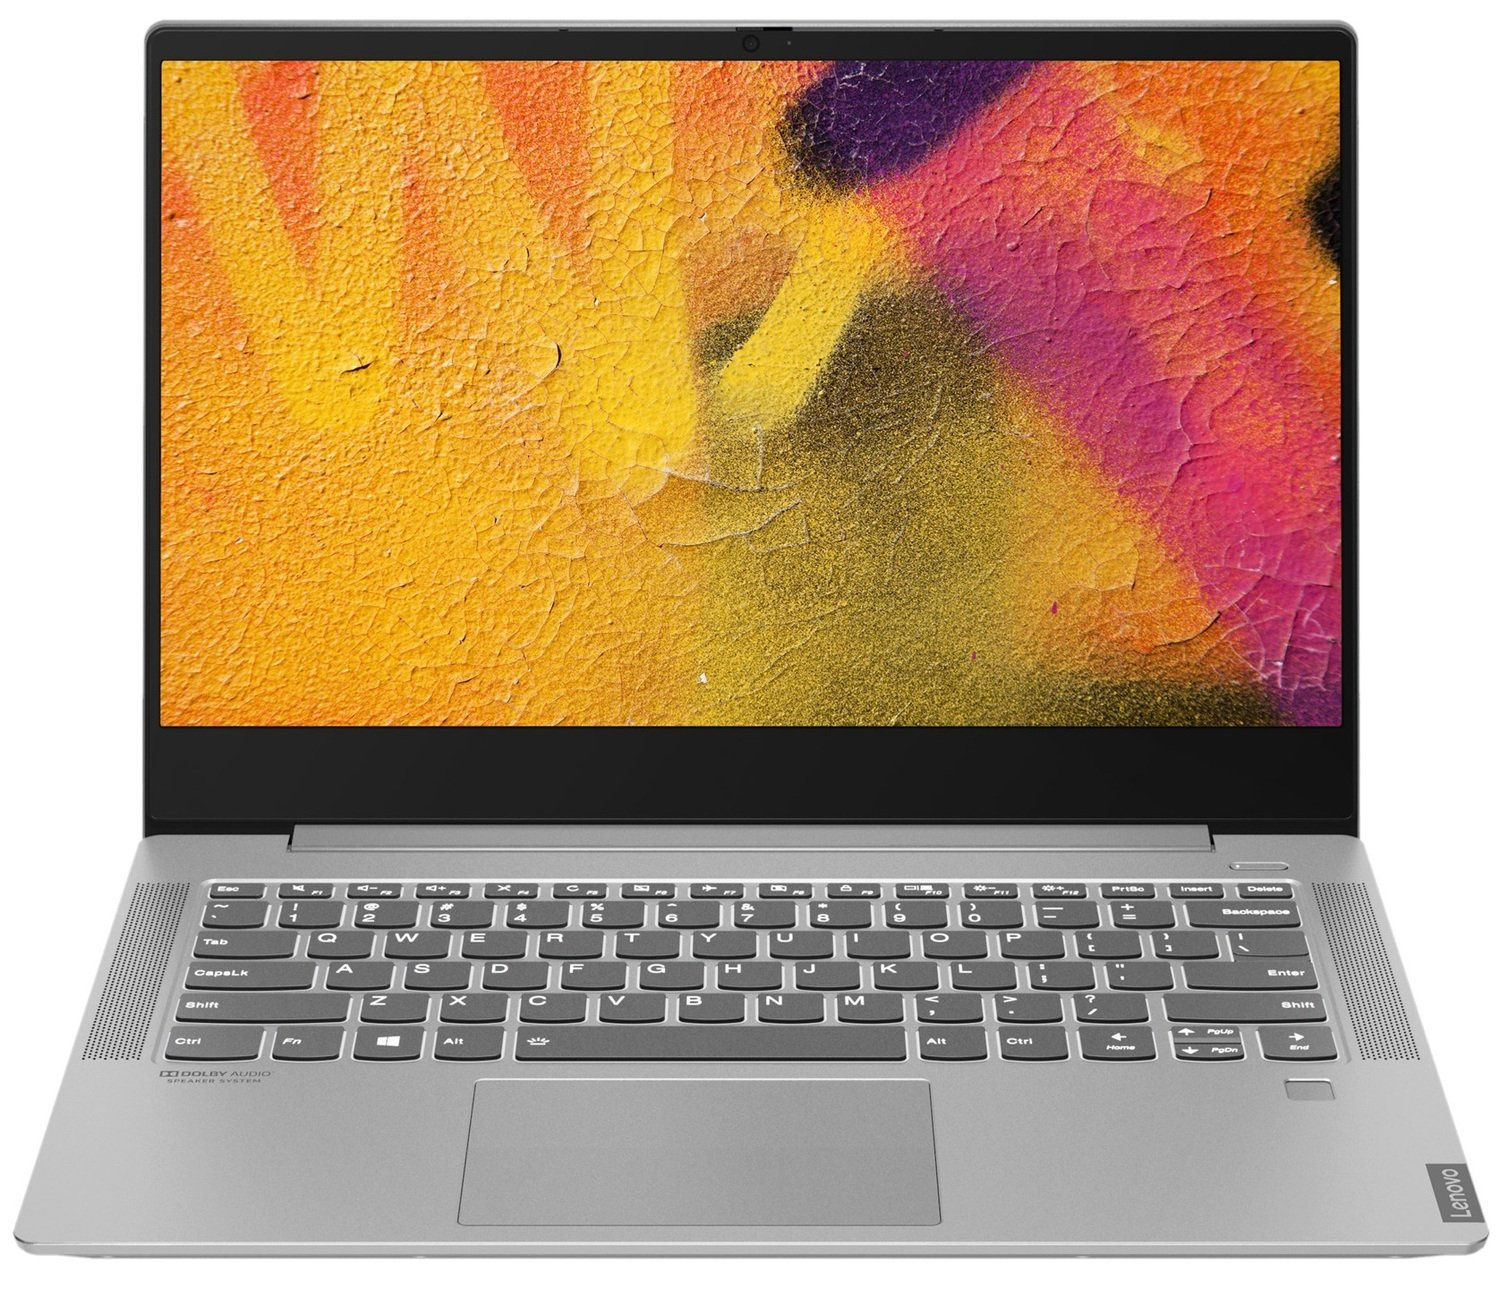 Производительный ноутбук LENOVO IdeaPad S540-14IWL